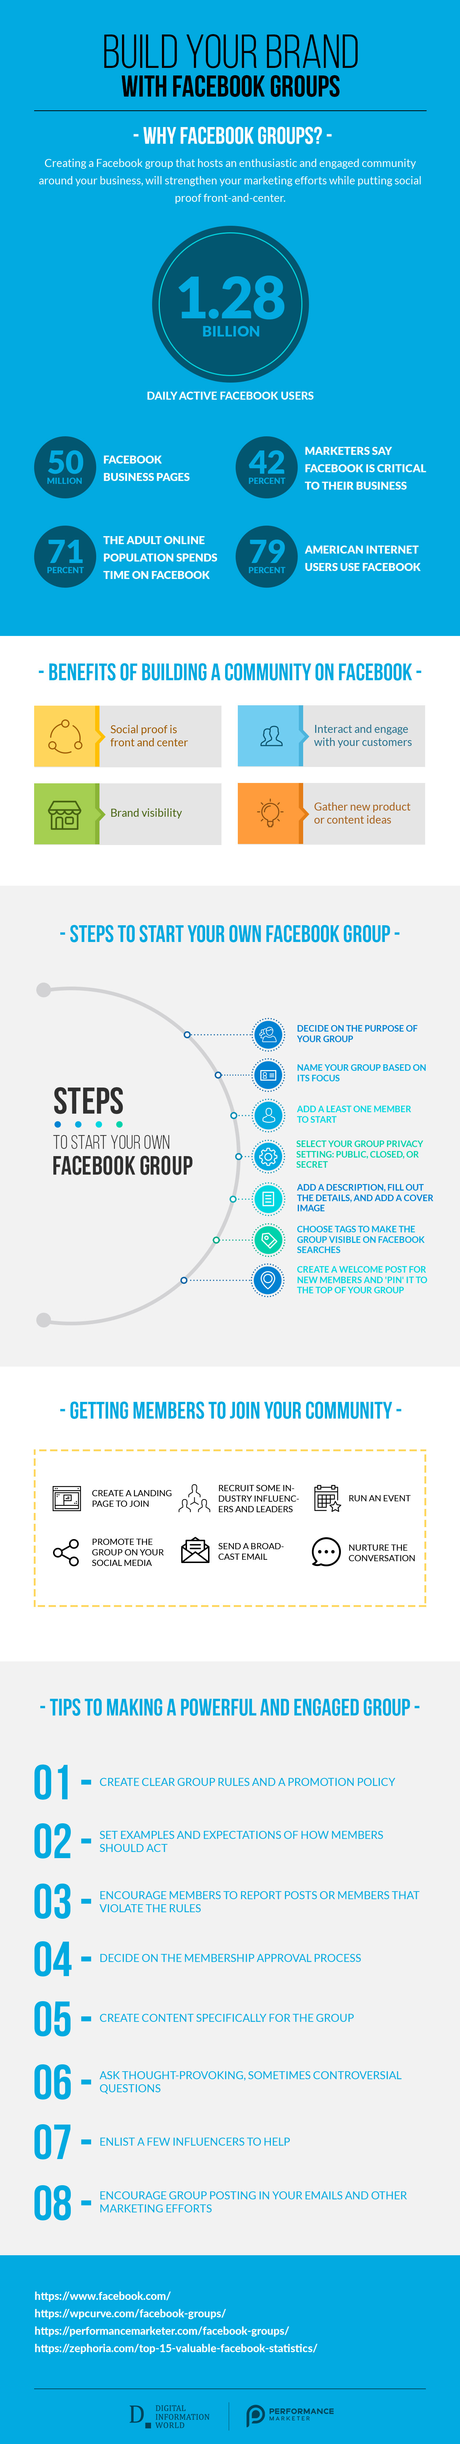 La importancia de los grupos de Facebook en la construcción de tu marca